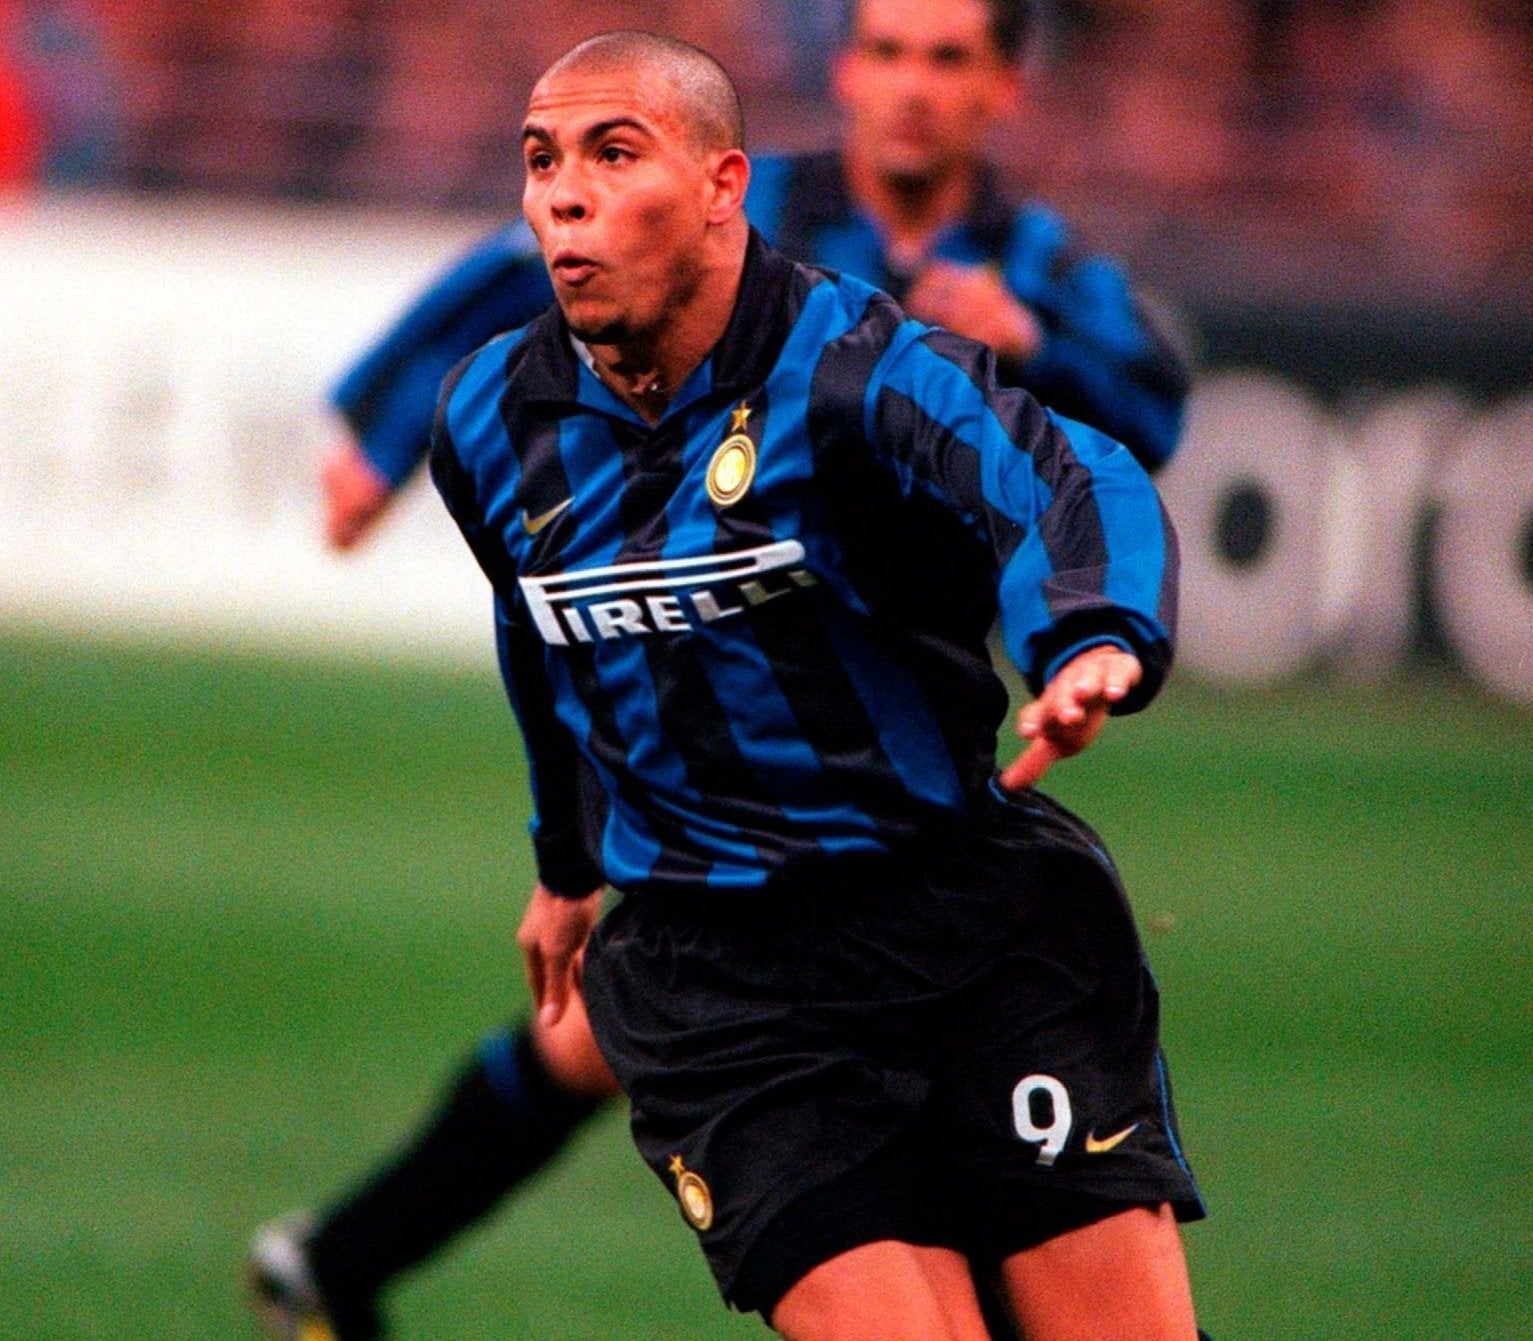 Inter Titular 1998/99 - Ronaldo - Thunder Internacional